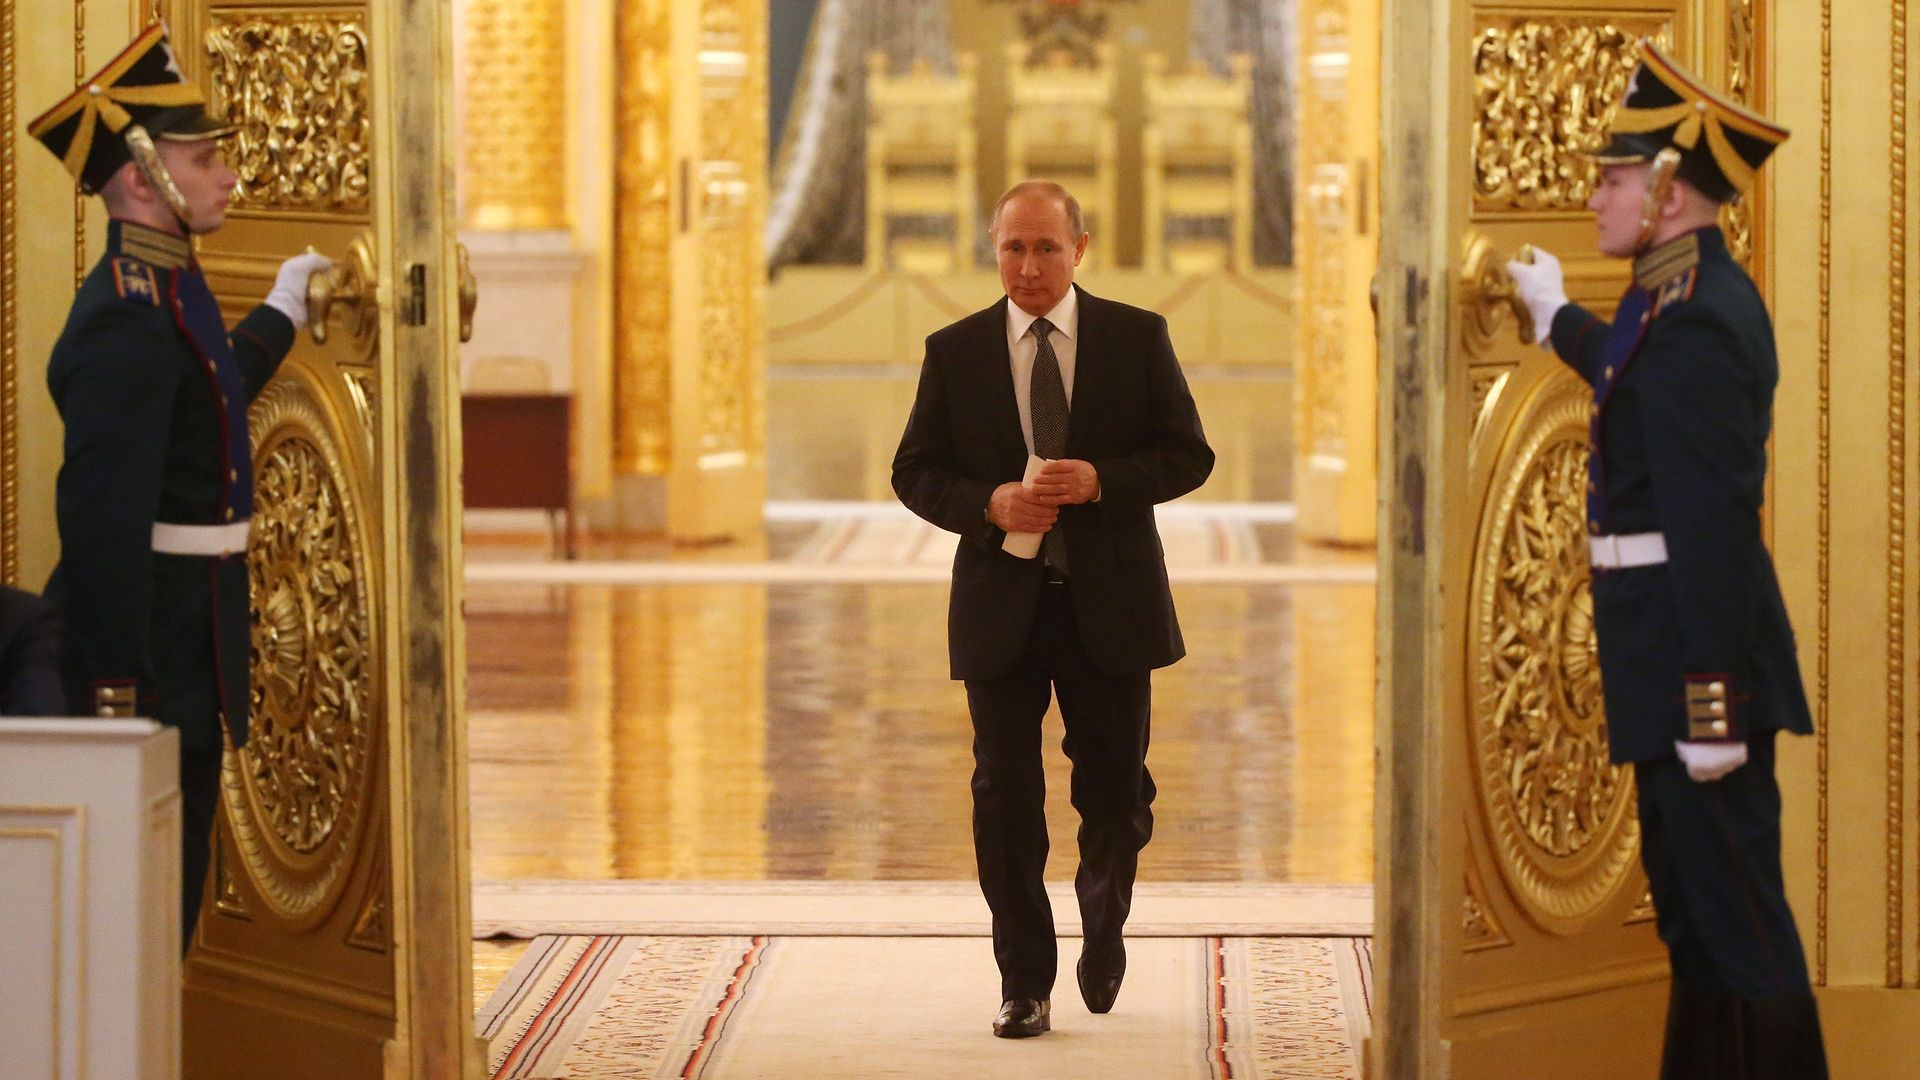 Vladimir Putin walks through golden doors at the Grand Kremlin Palace.